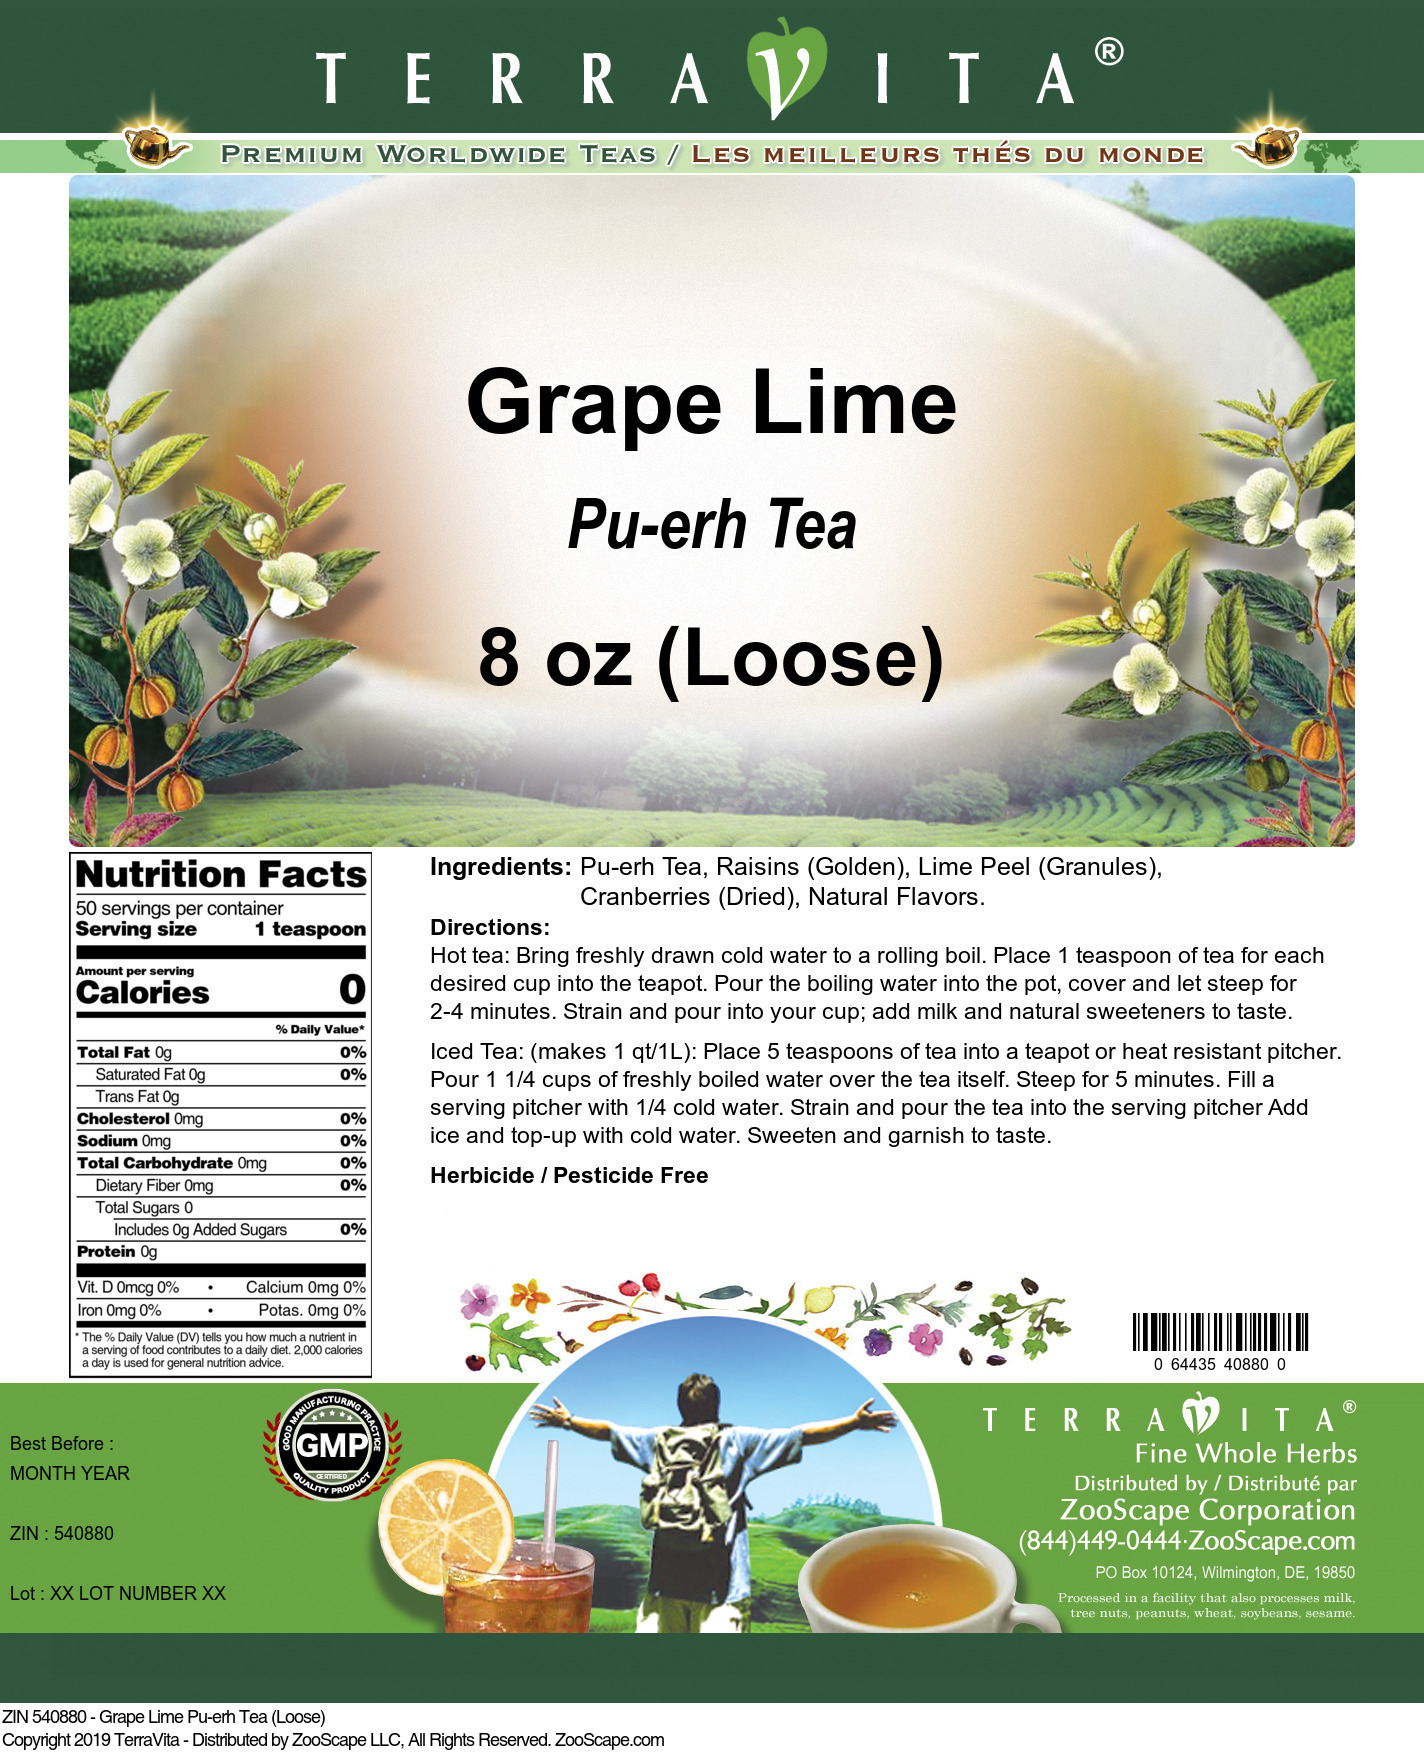 Grape Lime Pu-erh Tea (Loose) - Label